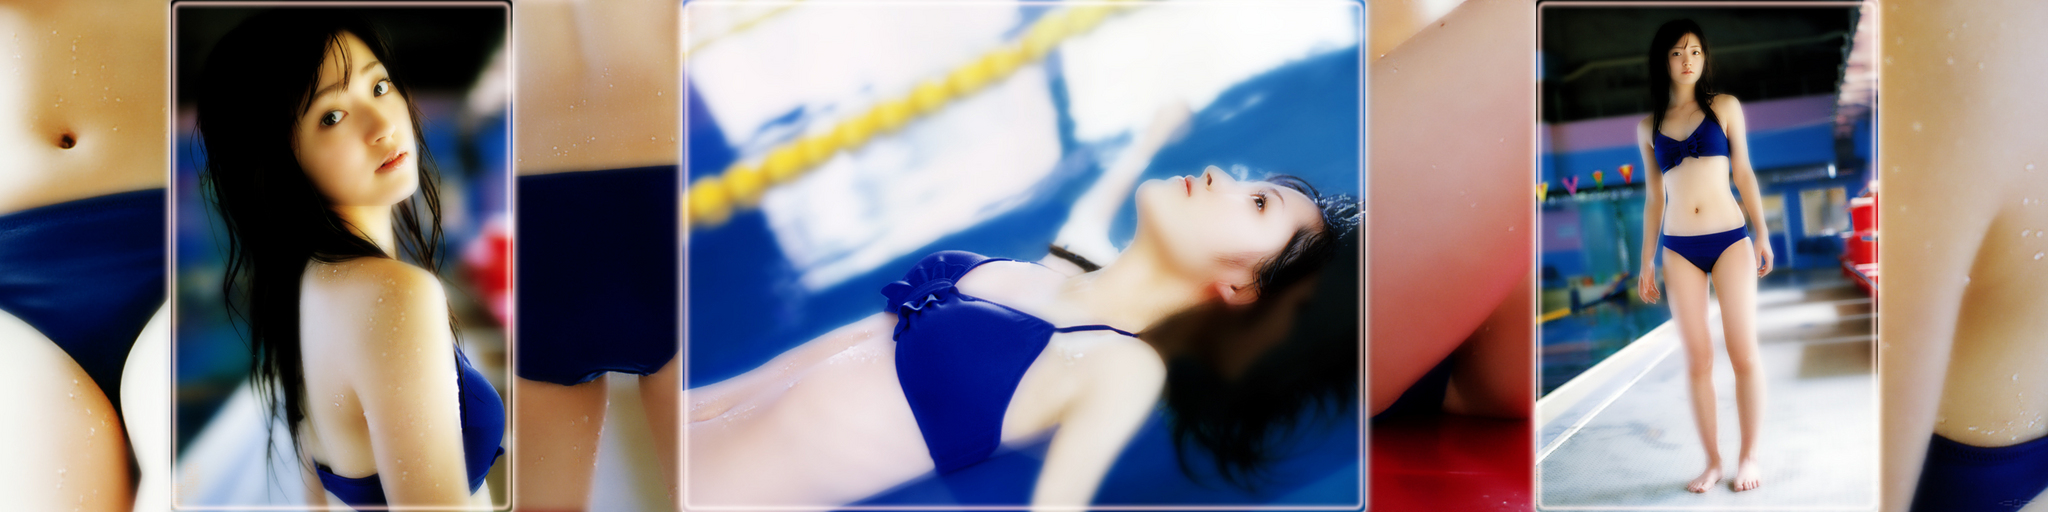 Airi-Blue-Bikini-2.jpg